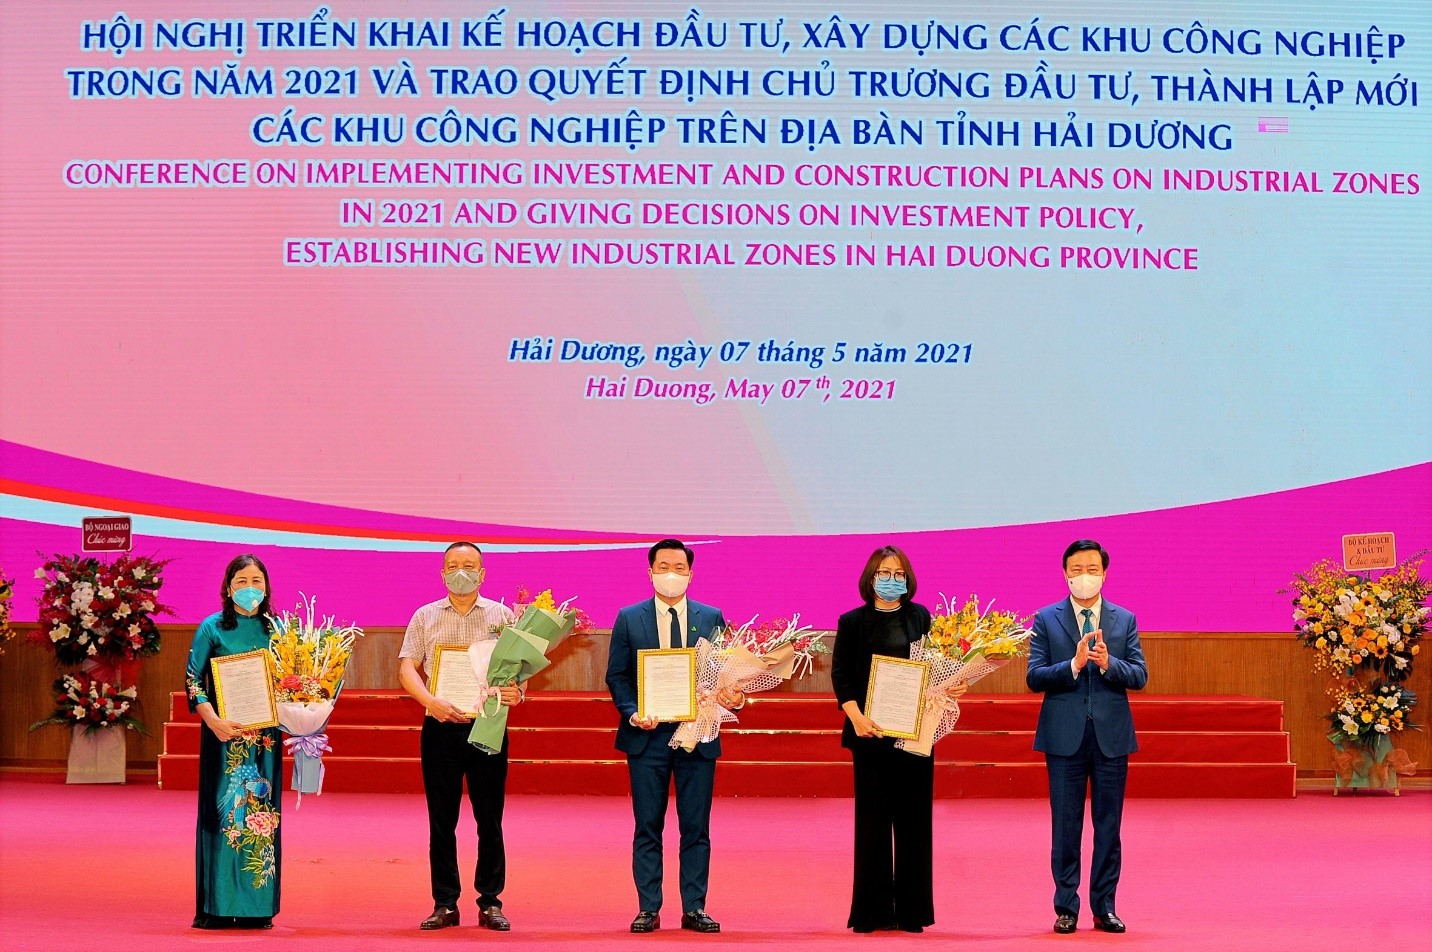 Bí thư Tỉnh ủy Hải Dương Phạm Xuân Thăng trao quyết định chủ trương đầu tư Khu công nghiệp Gia Lộc cho bà Phạm Hồng Thúy - Tổng Giám đốc TNI Holdings Vietnam